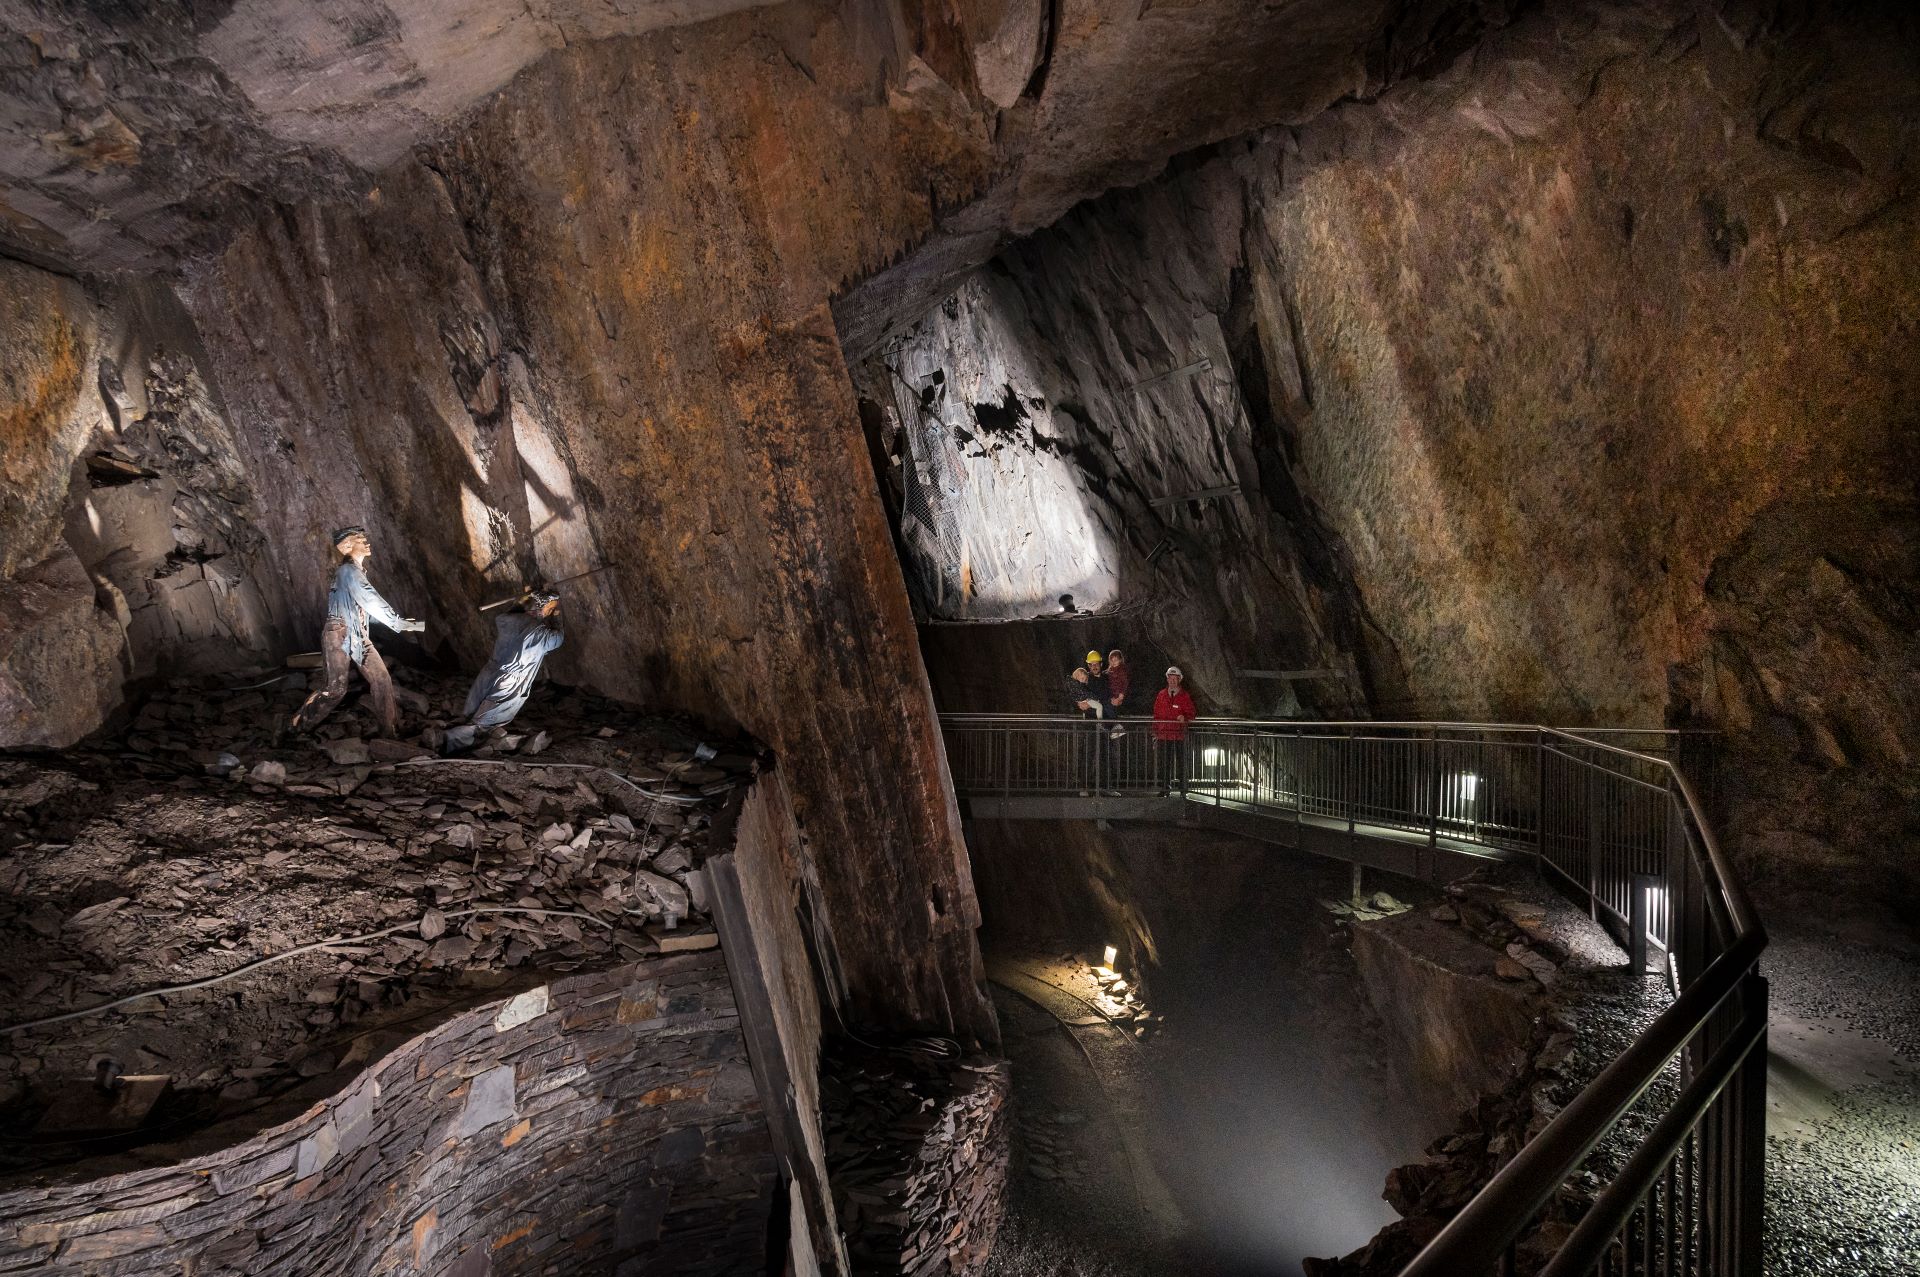 Im Inneren des historischen Bergwerks beobachten die Besucher Ausstellungen, die zeigen, wie die Arbeit für die Bergleute damals aussah.